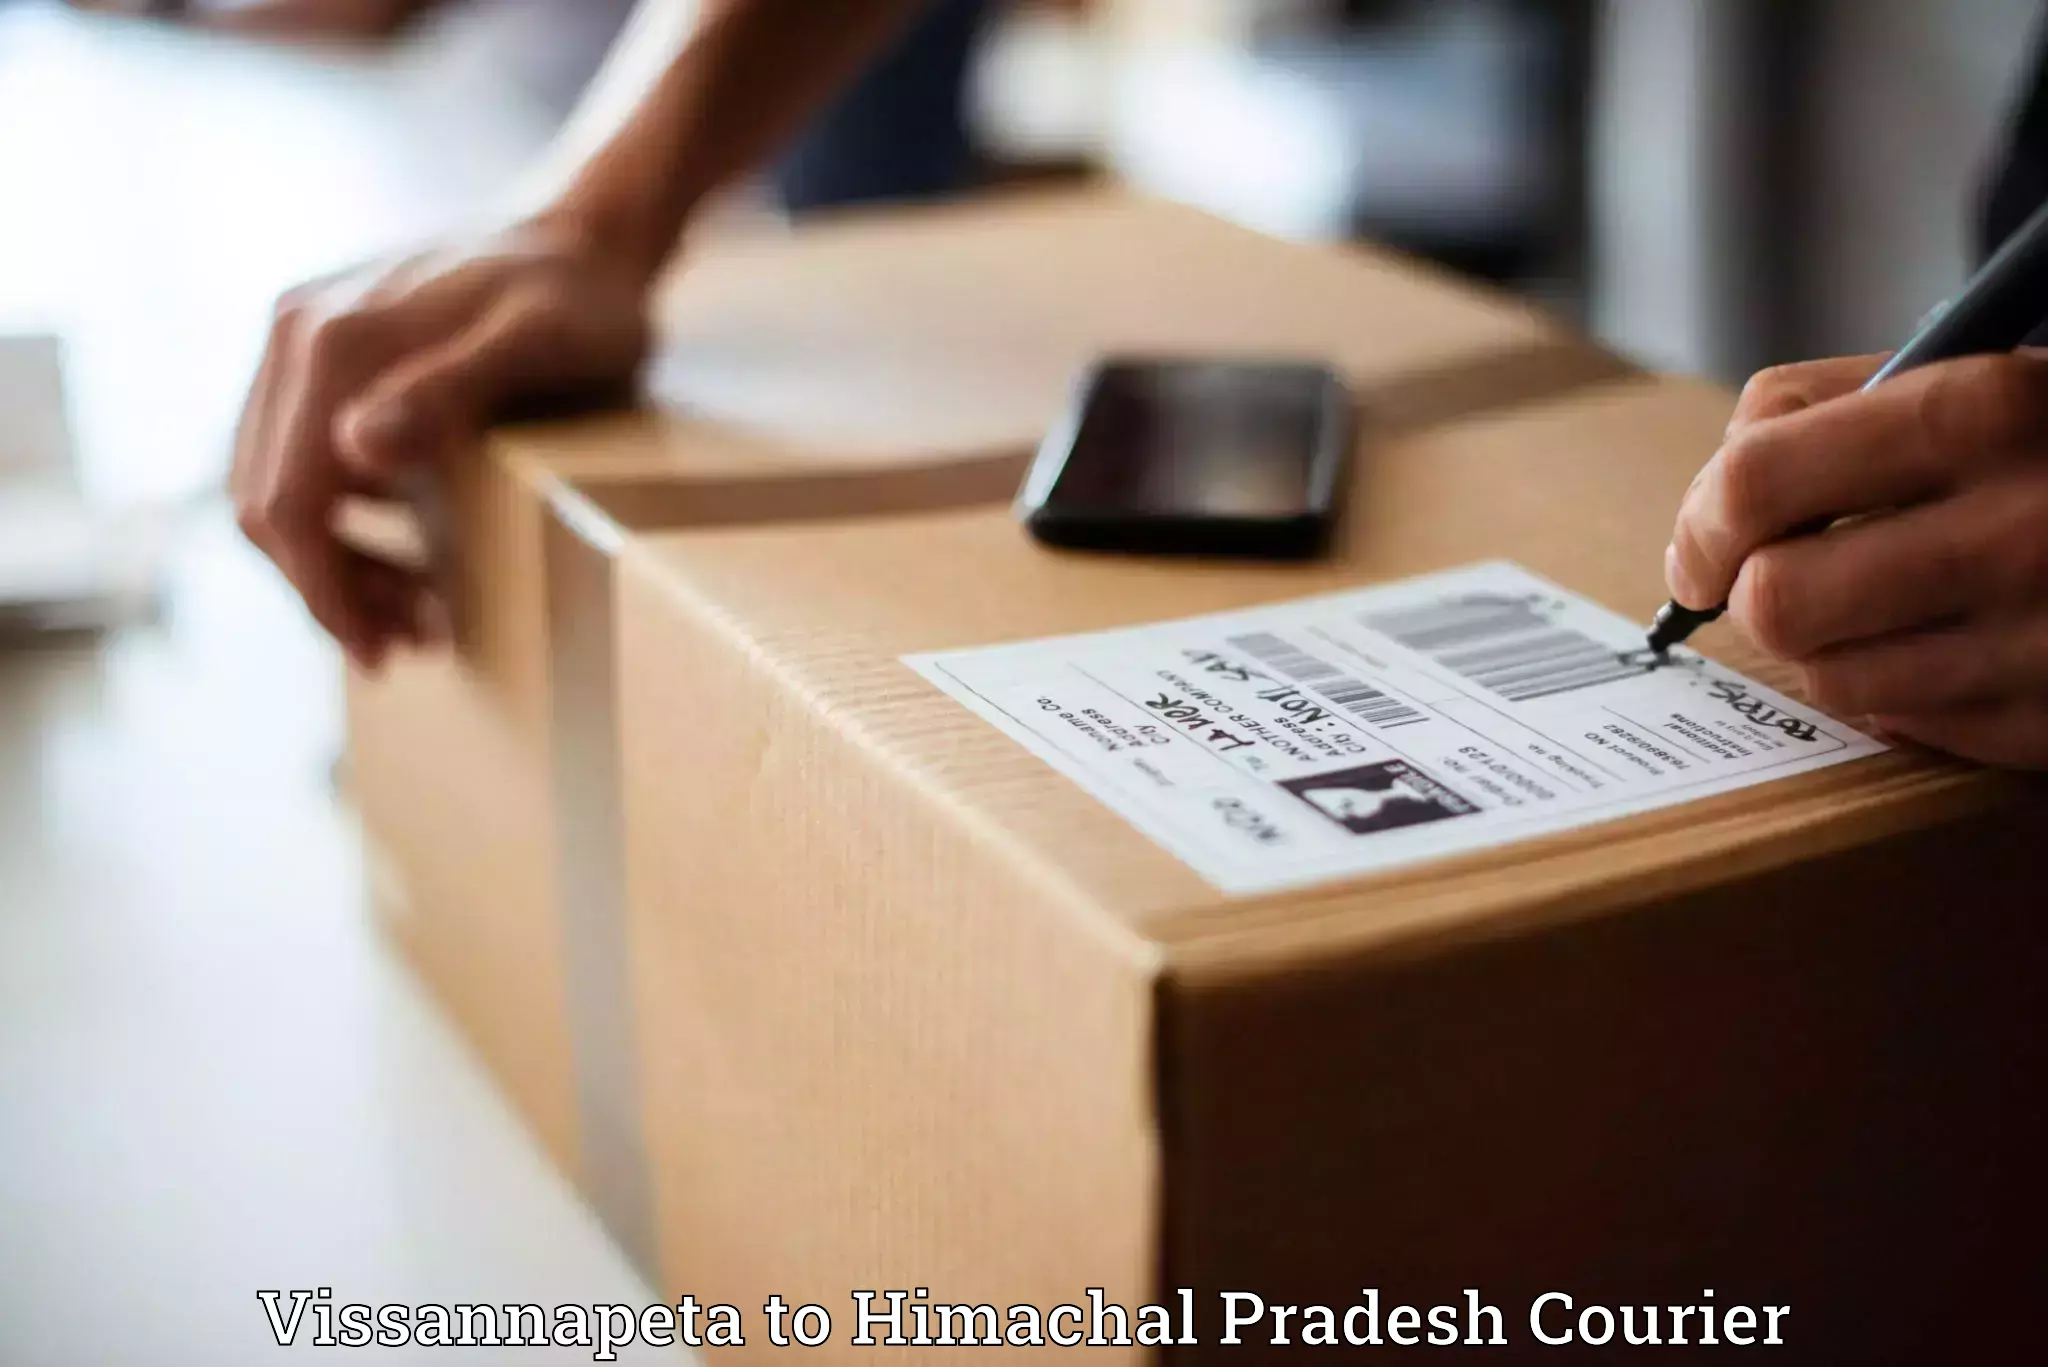 Quick parcel dispatch in Vissannapeta to Indora